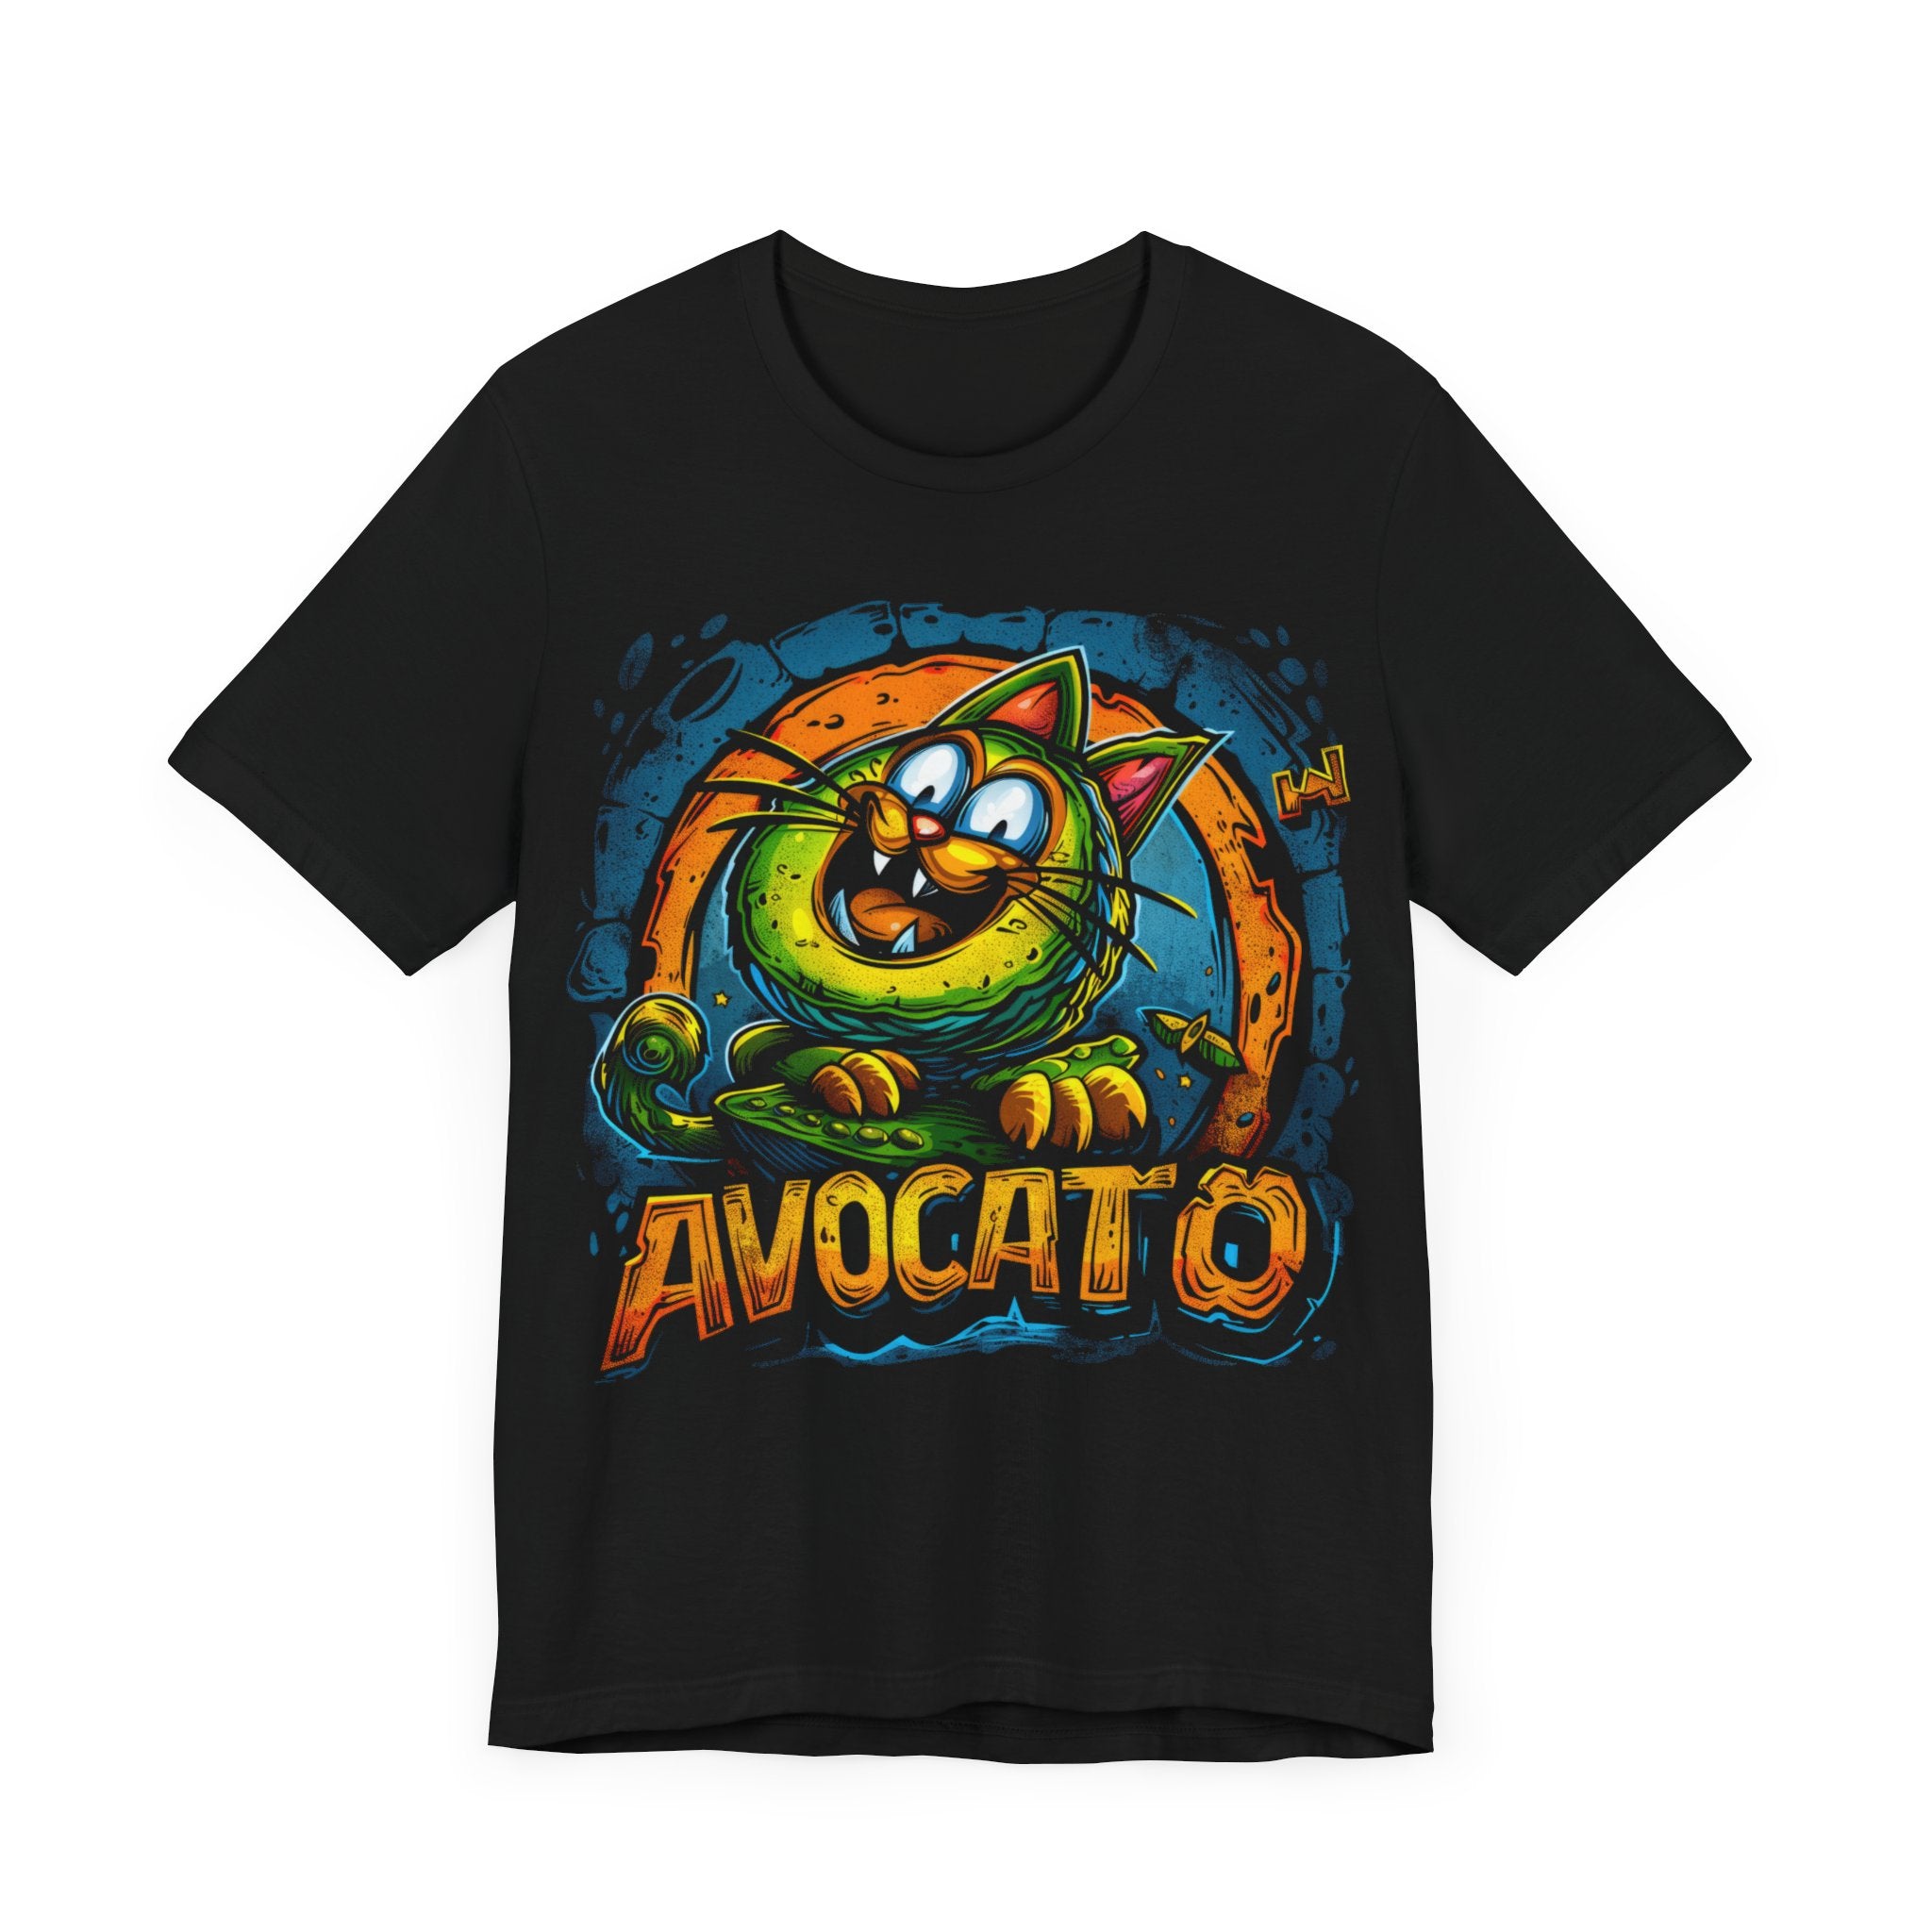 Cat Avocado aka Avocato T-Shirt Funny Cat Lover Tee